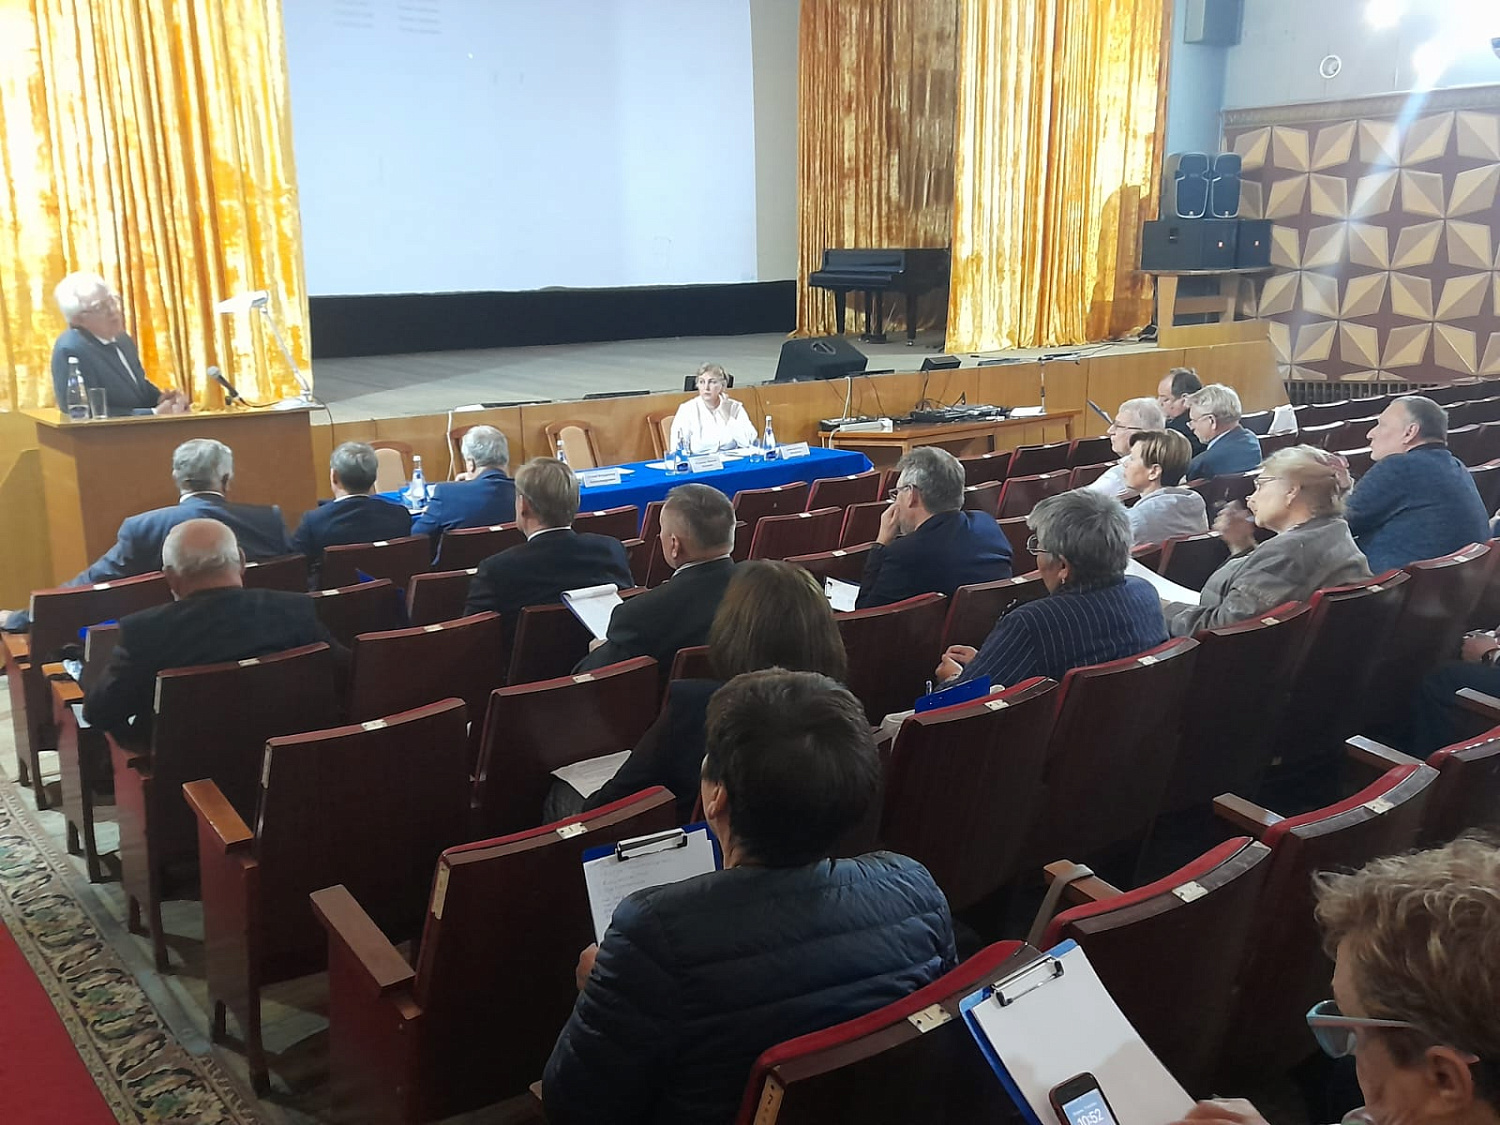 С 17 по 20 октября на базе санатория «Архипо-Осиповка» состоялась ежегодная конференция Межотраслевого движения ветеранов атомной энергетики и промышленности